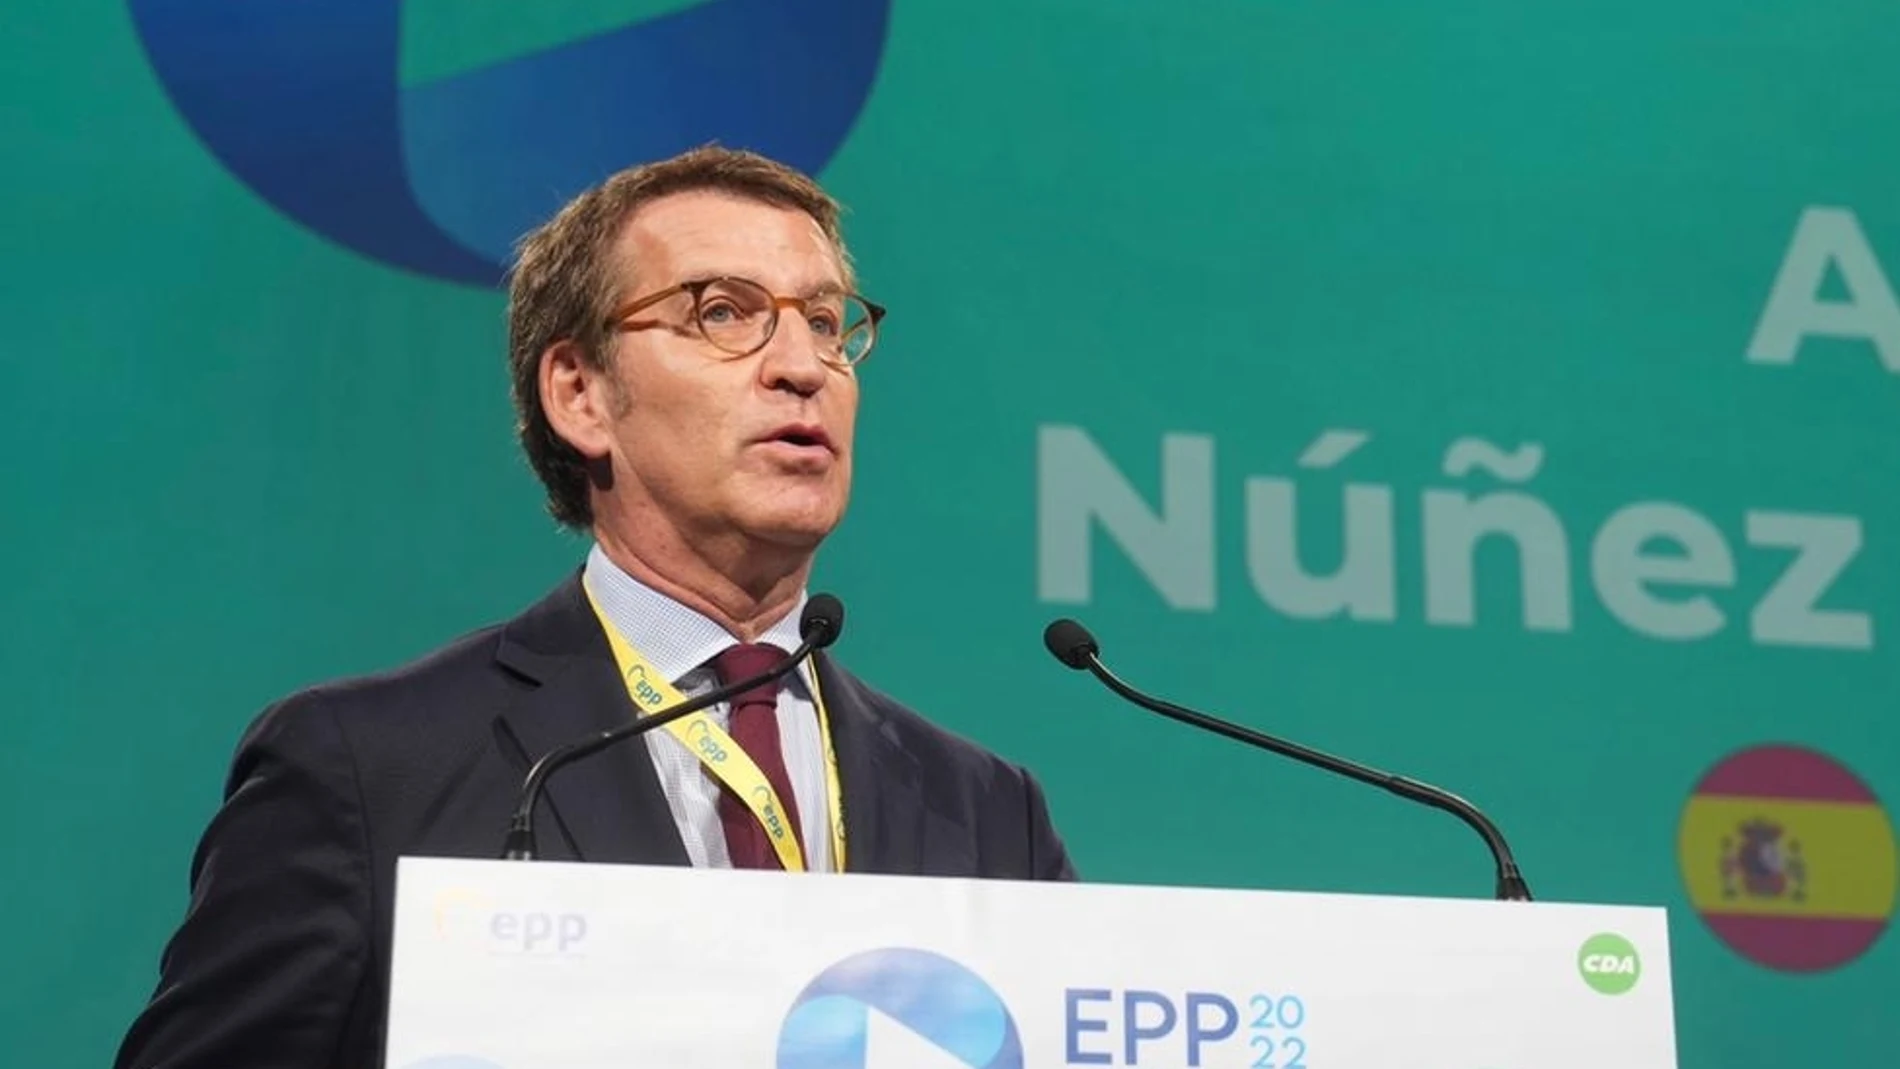 El líder del PP, Alberto Núñez Feijóo ante el pleno del congreso del PPE en Rotterdam